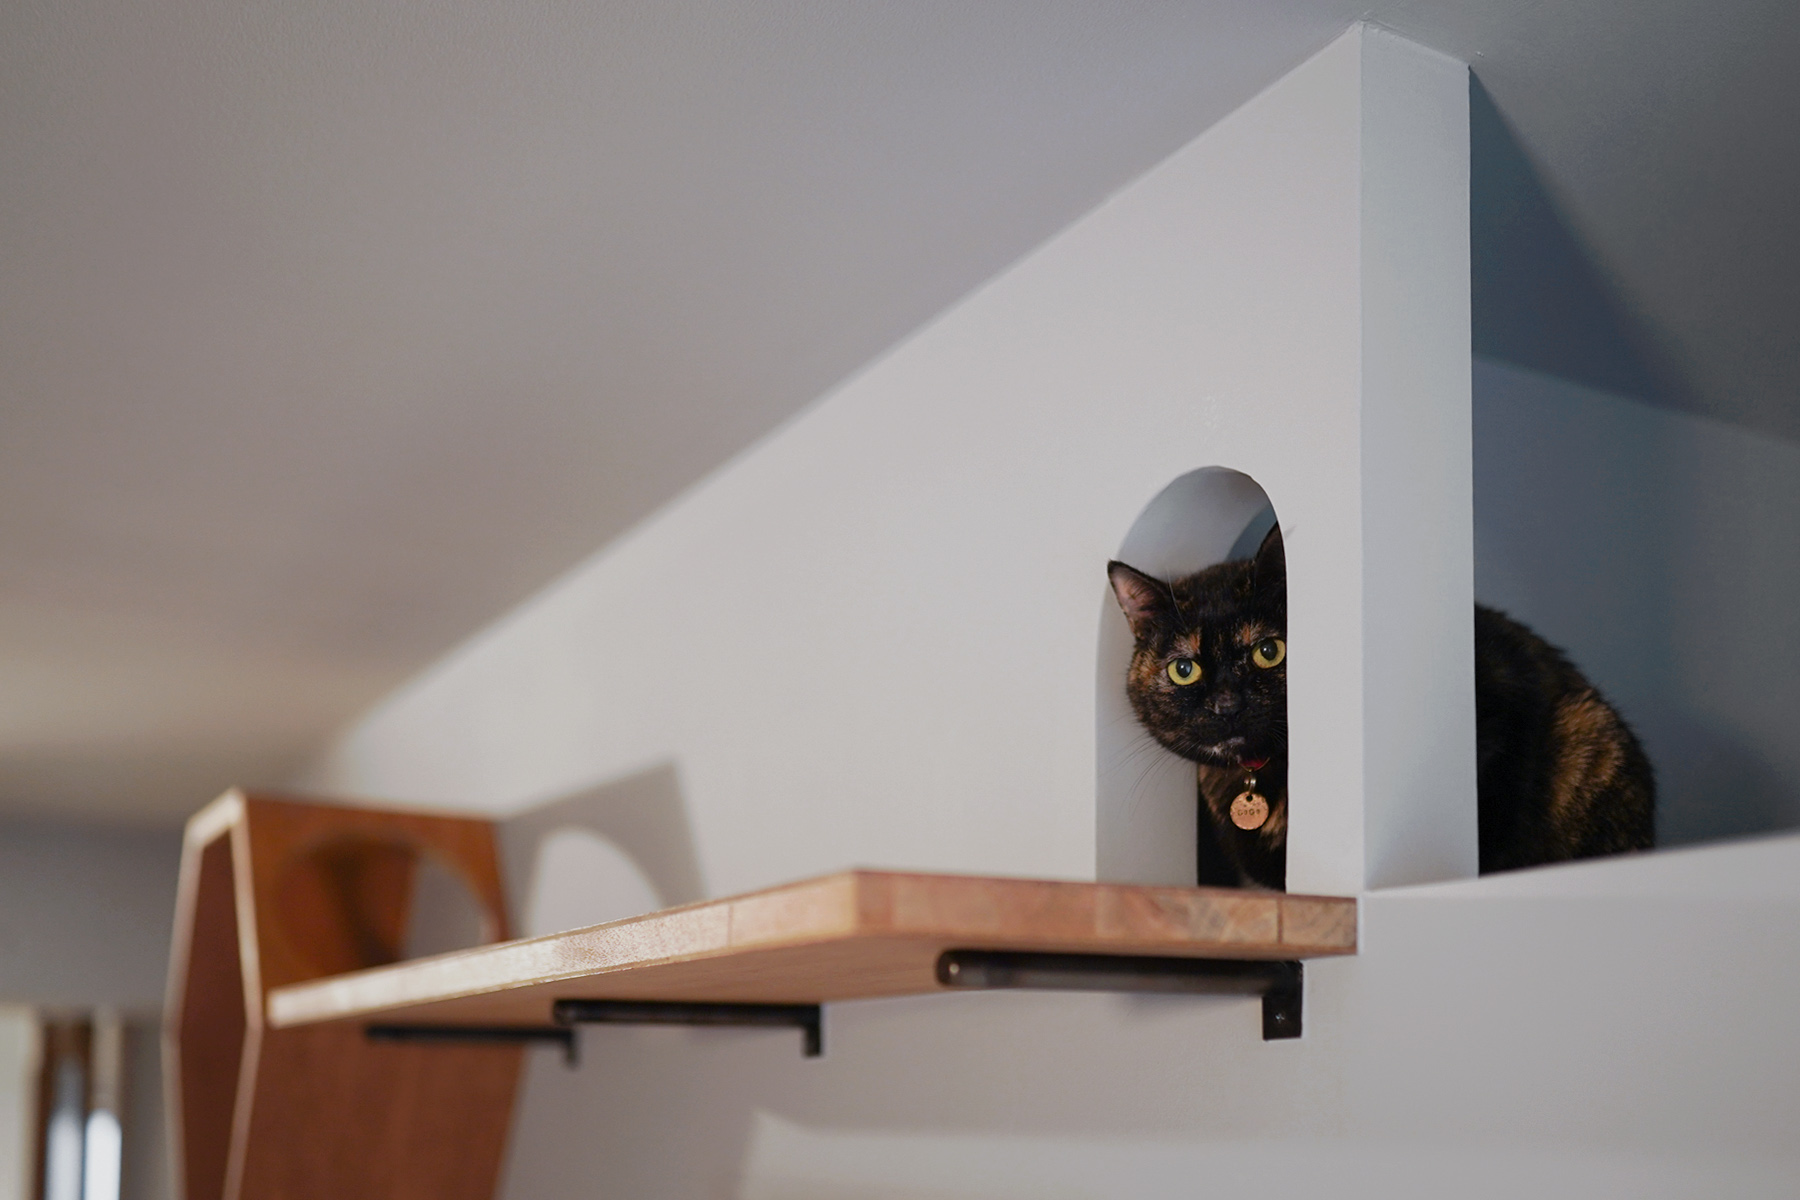 キャットウォーク、ネコトンネルから顔をだす愛猫のココちゃん。マンションリノベーション京都